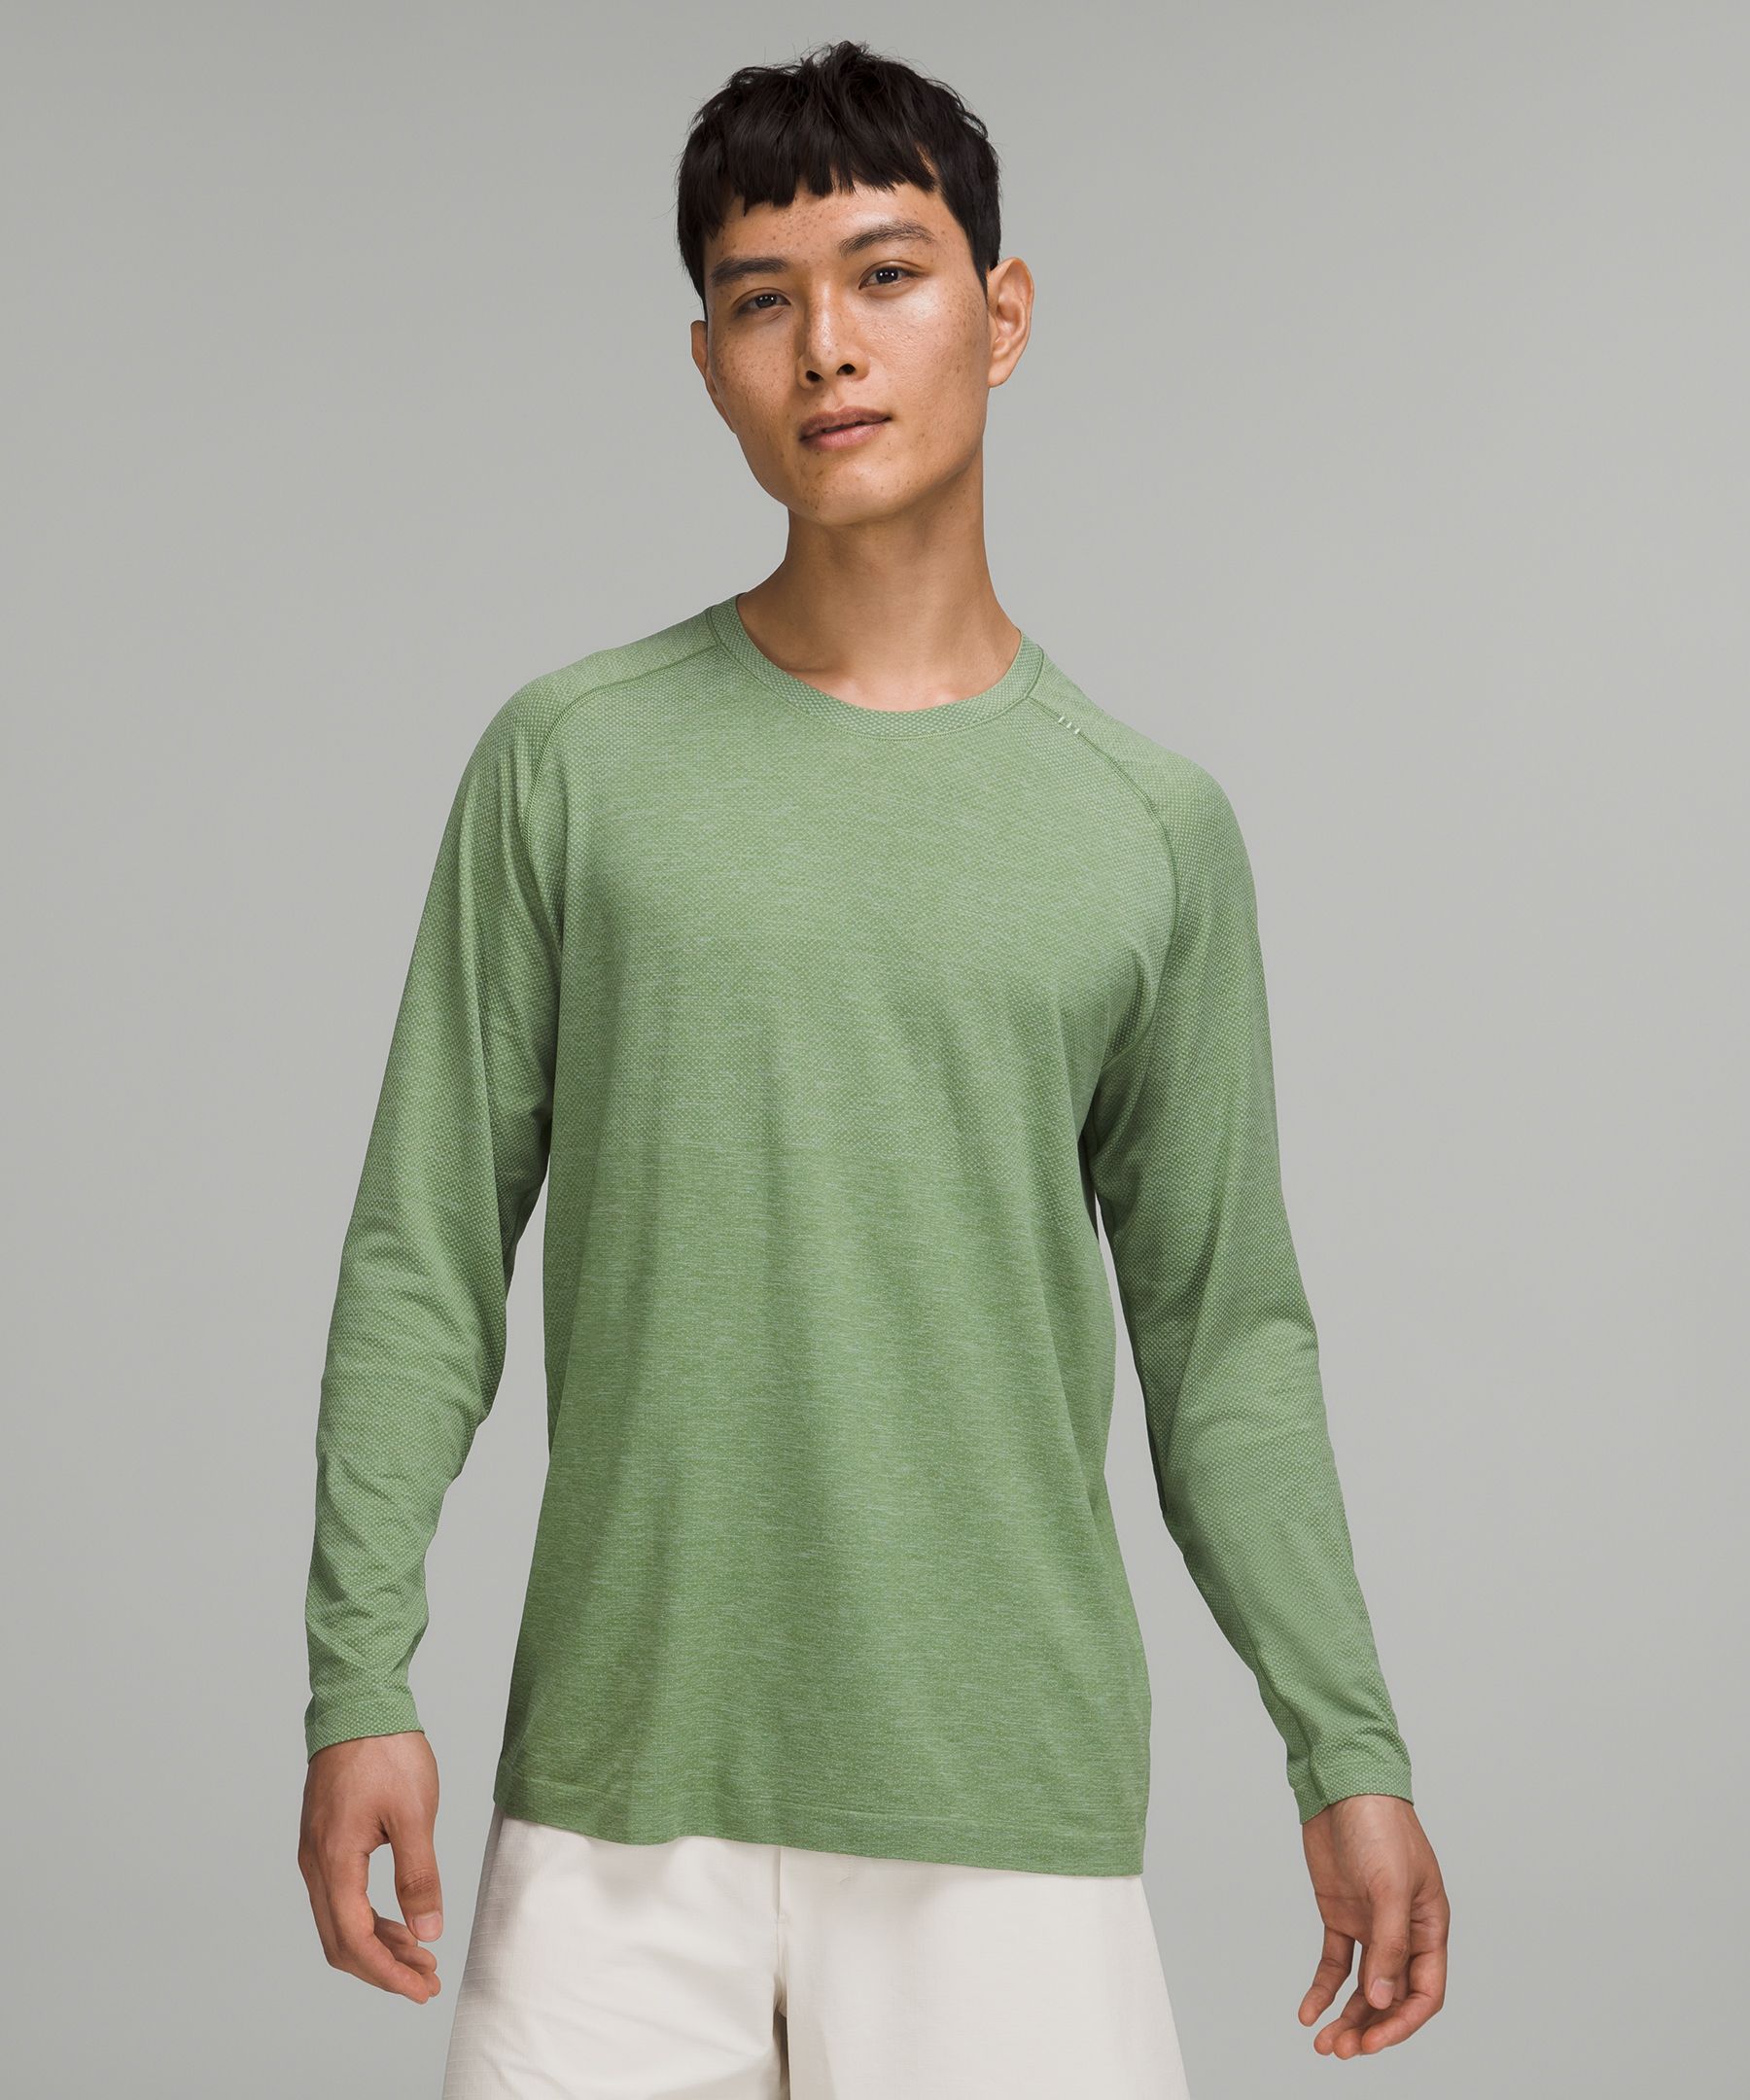 Men's Long Sleeve Shirts | lululemon